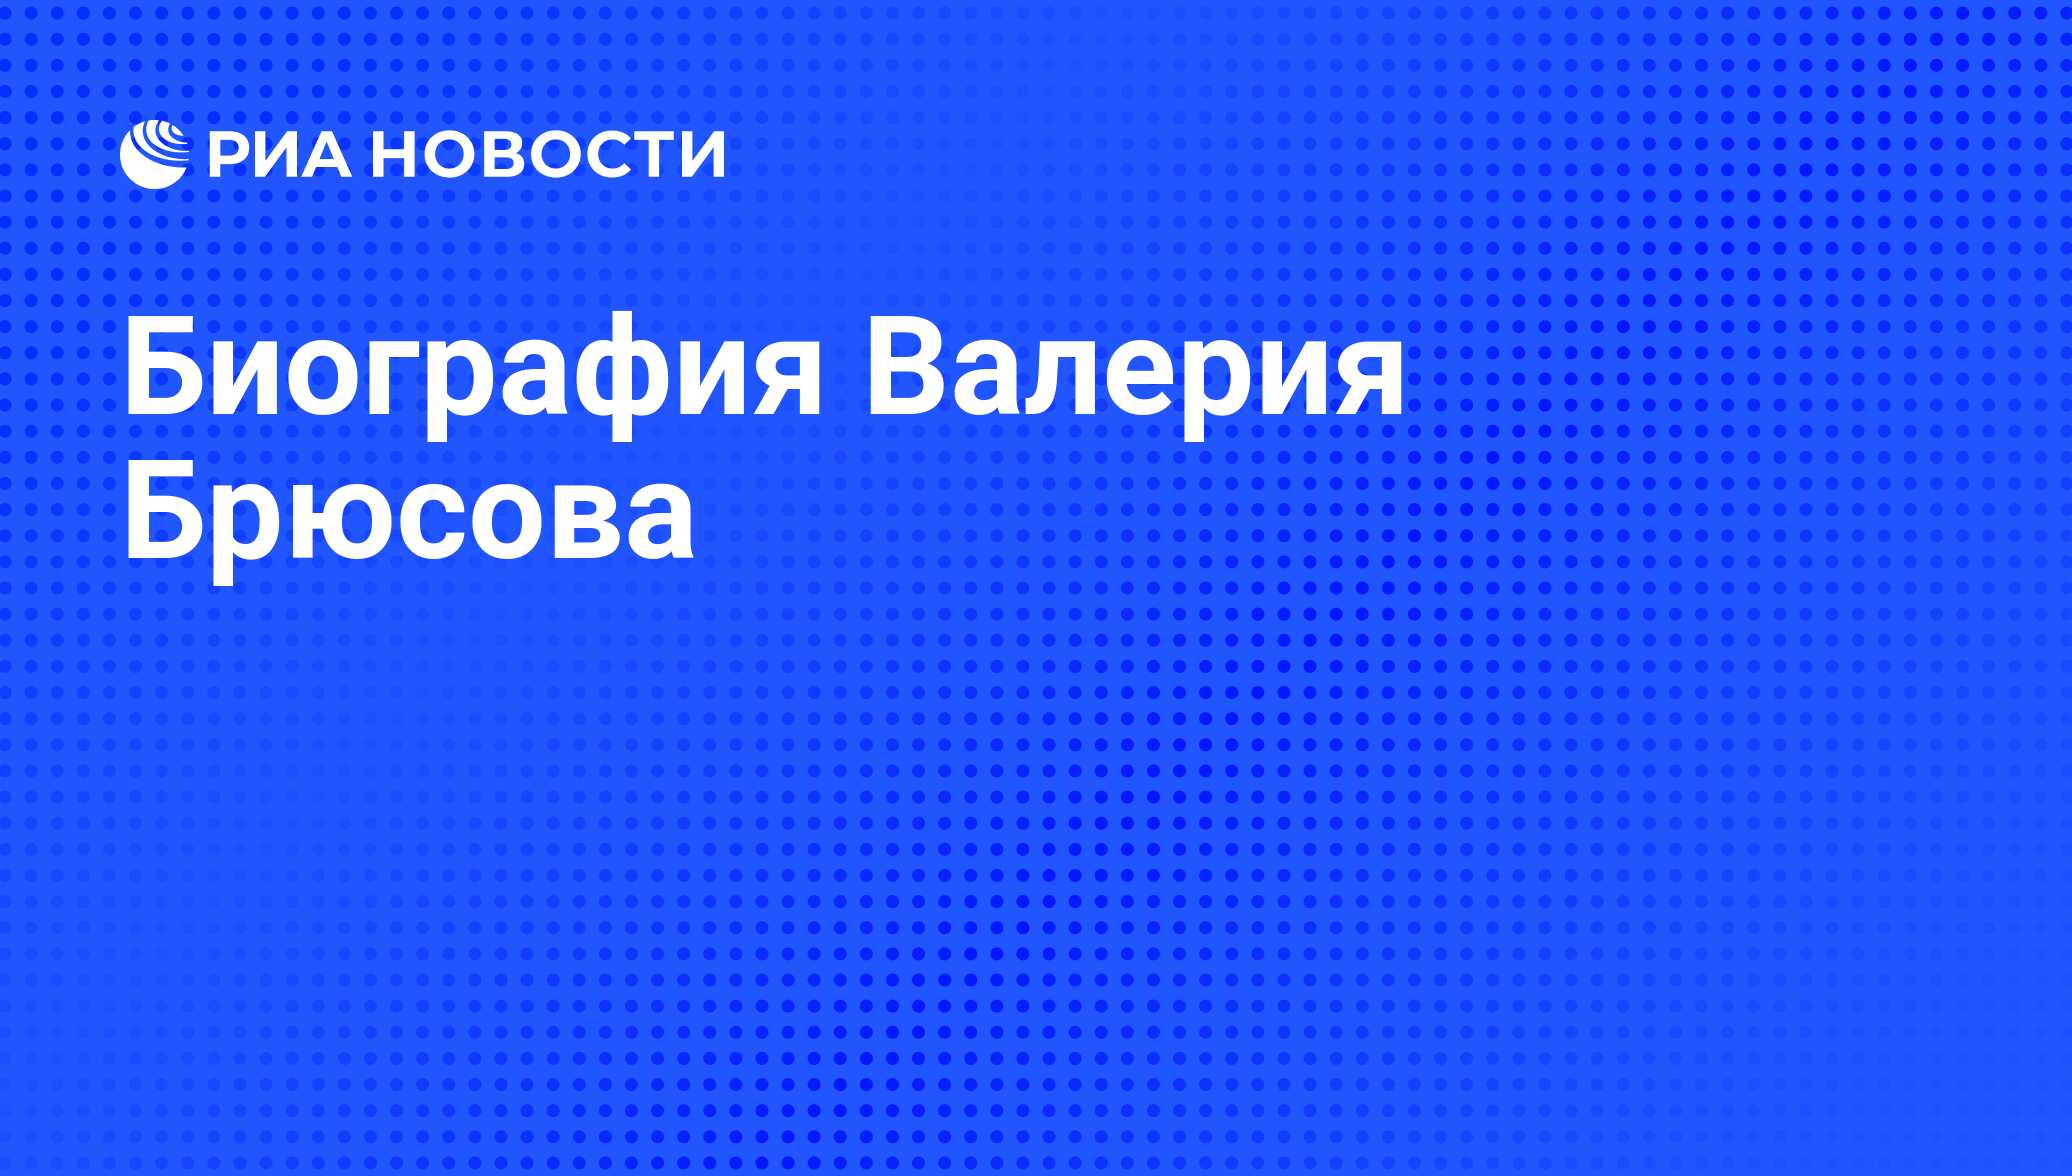 Биография Валерия Брюсова - РИА Новости, 01.03.2020